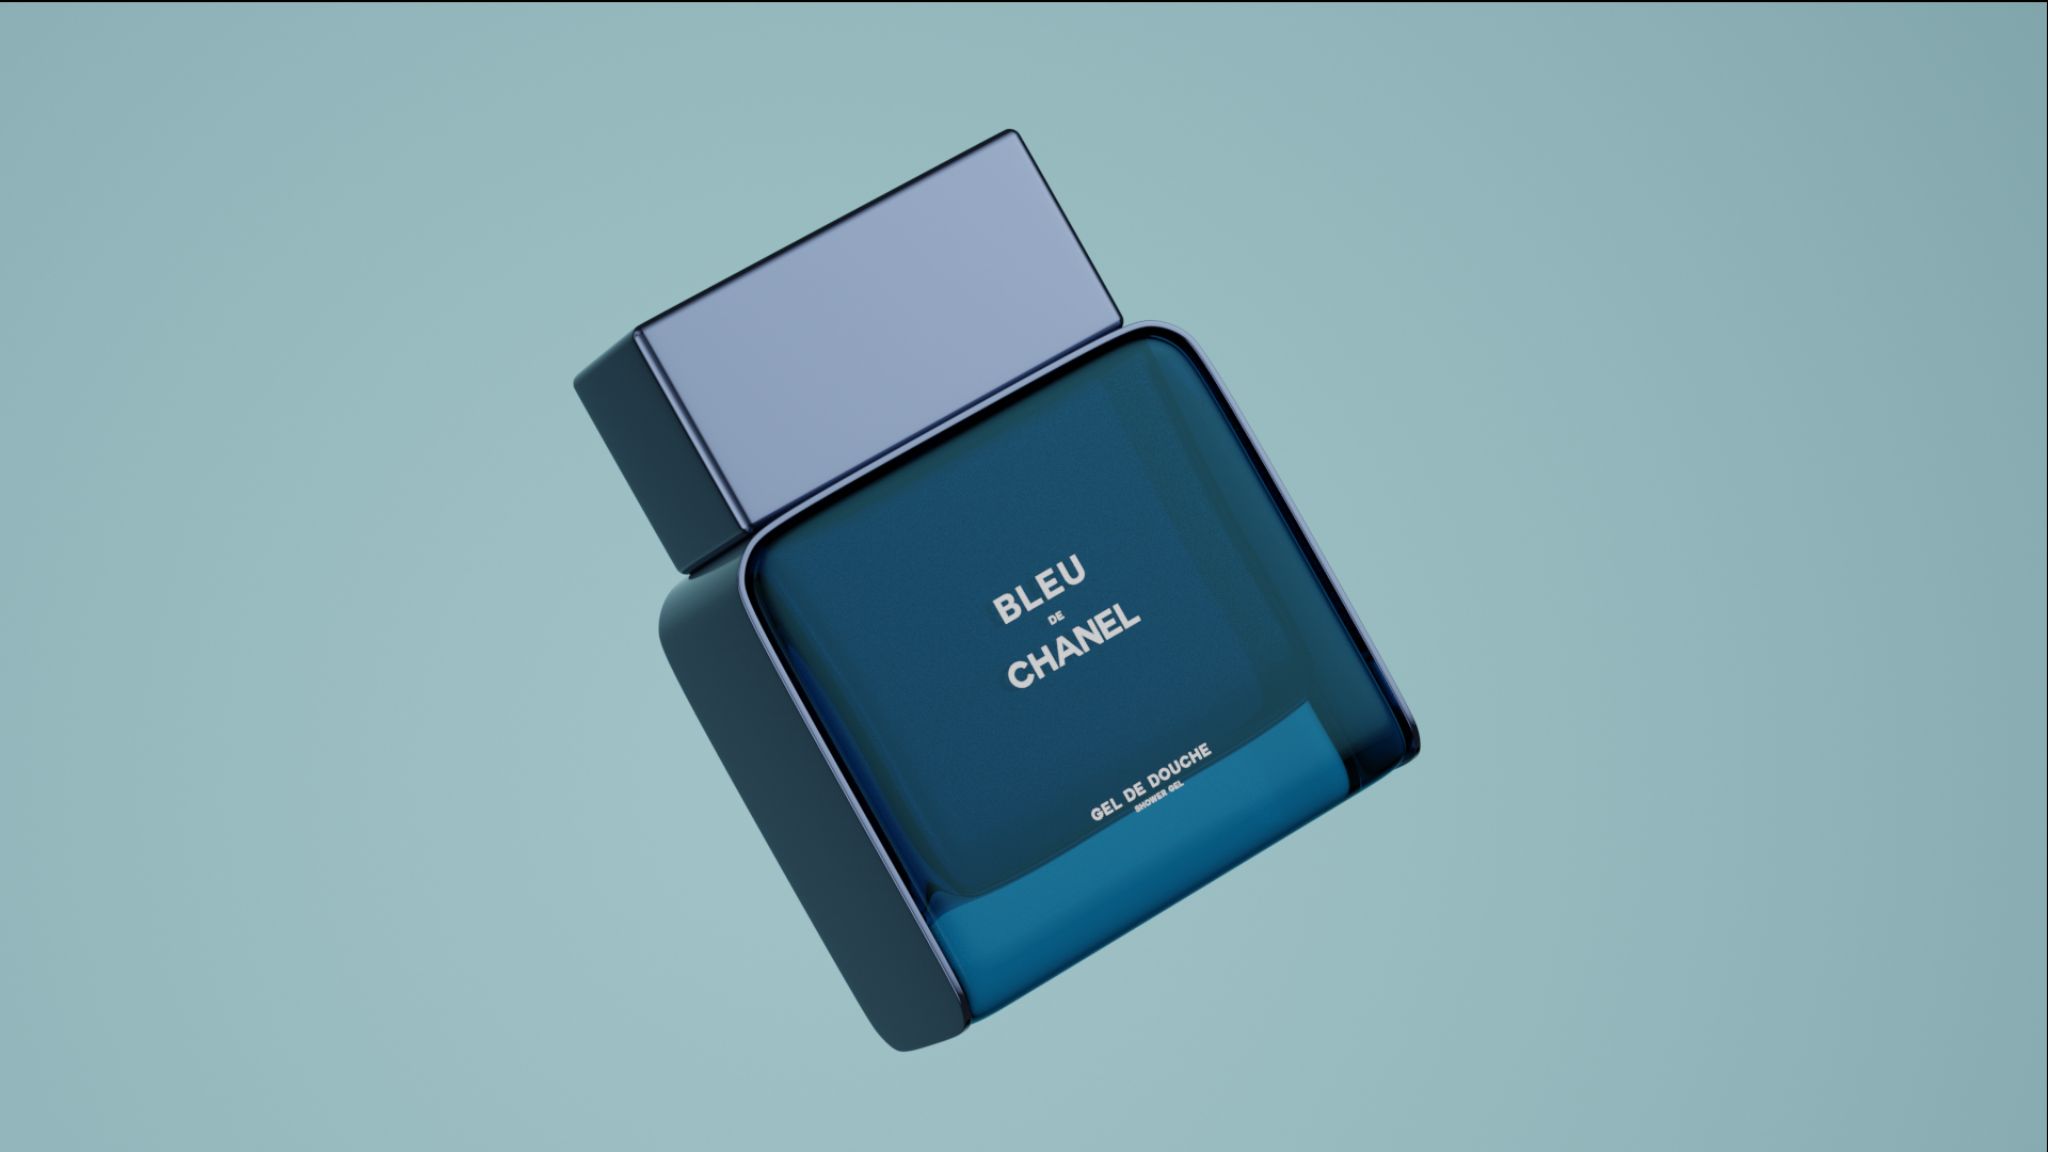 Bleu de Chanel Shower Gel on display 3D product promo still